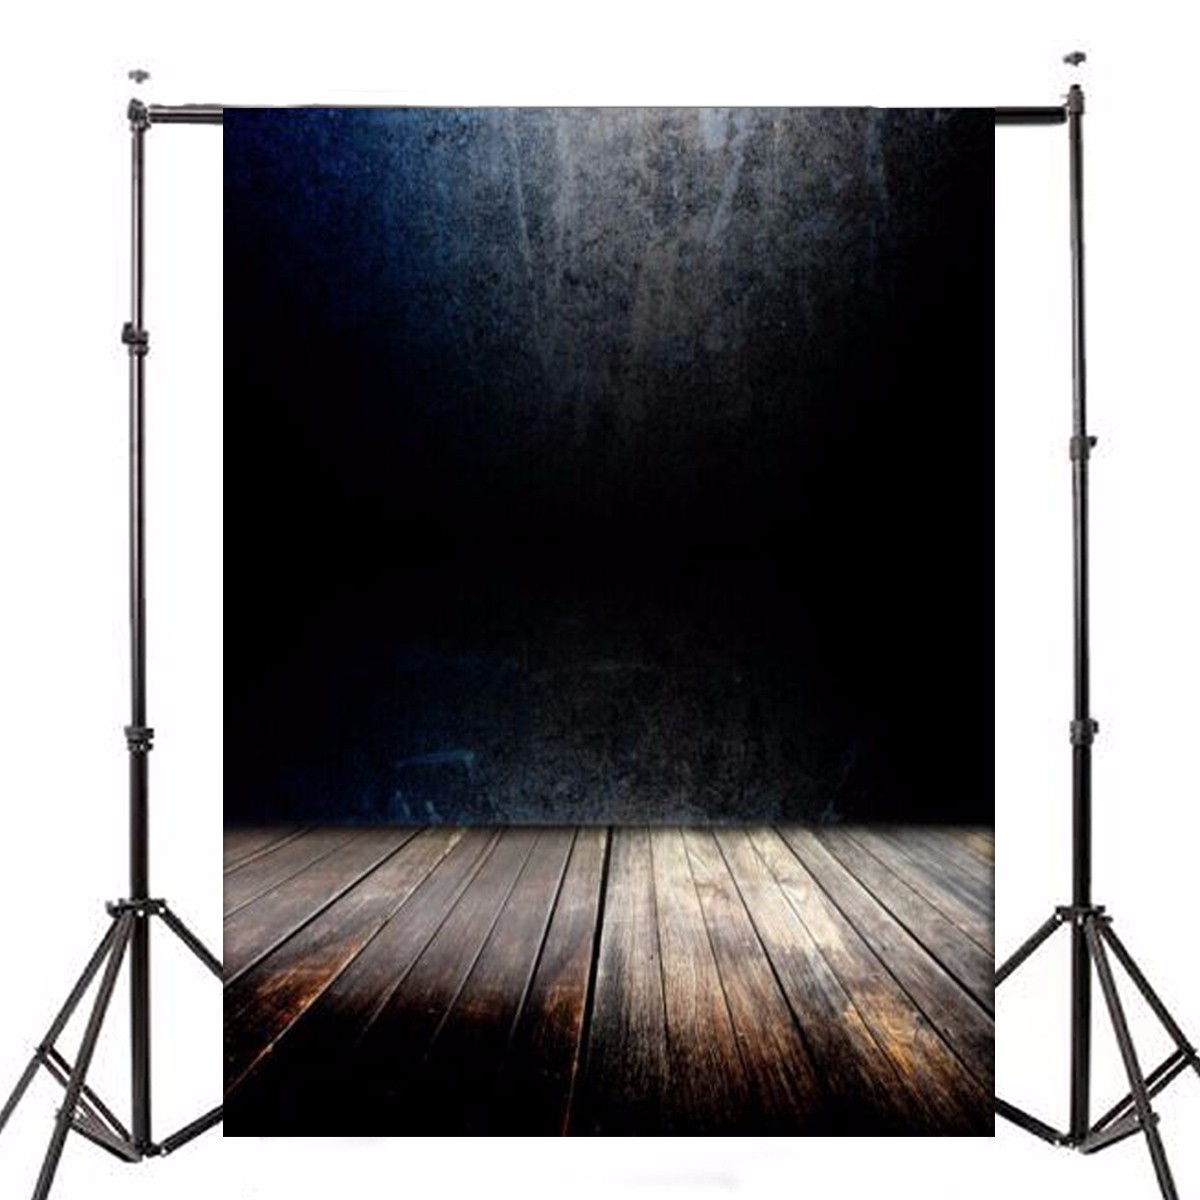 

5x7ft темная стена деревянный пол виниловый фотобанк Фото фона Студия Prop